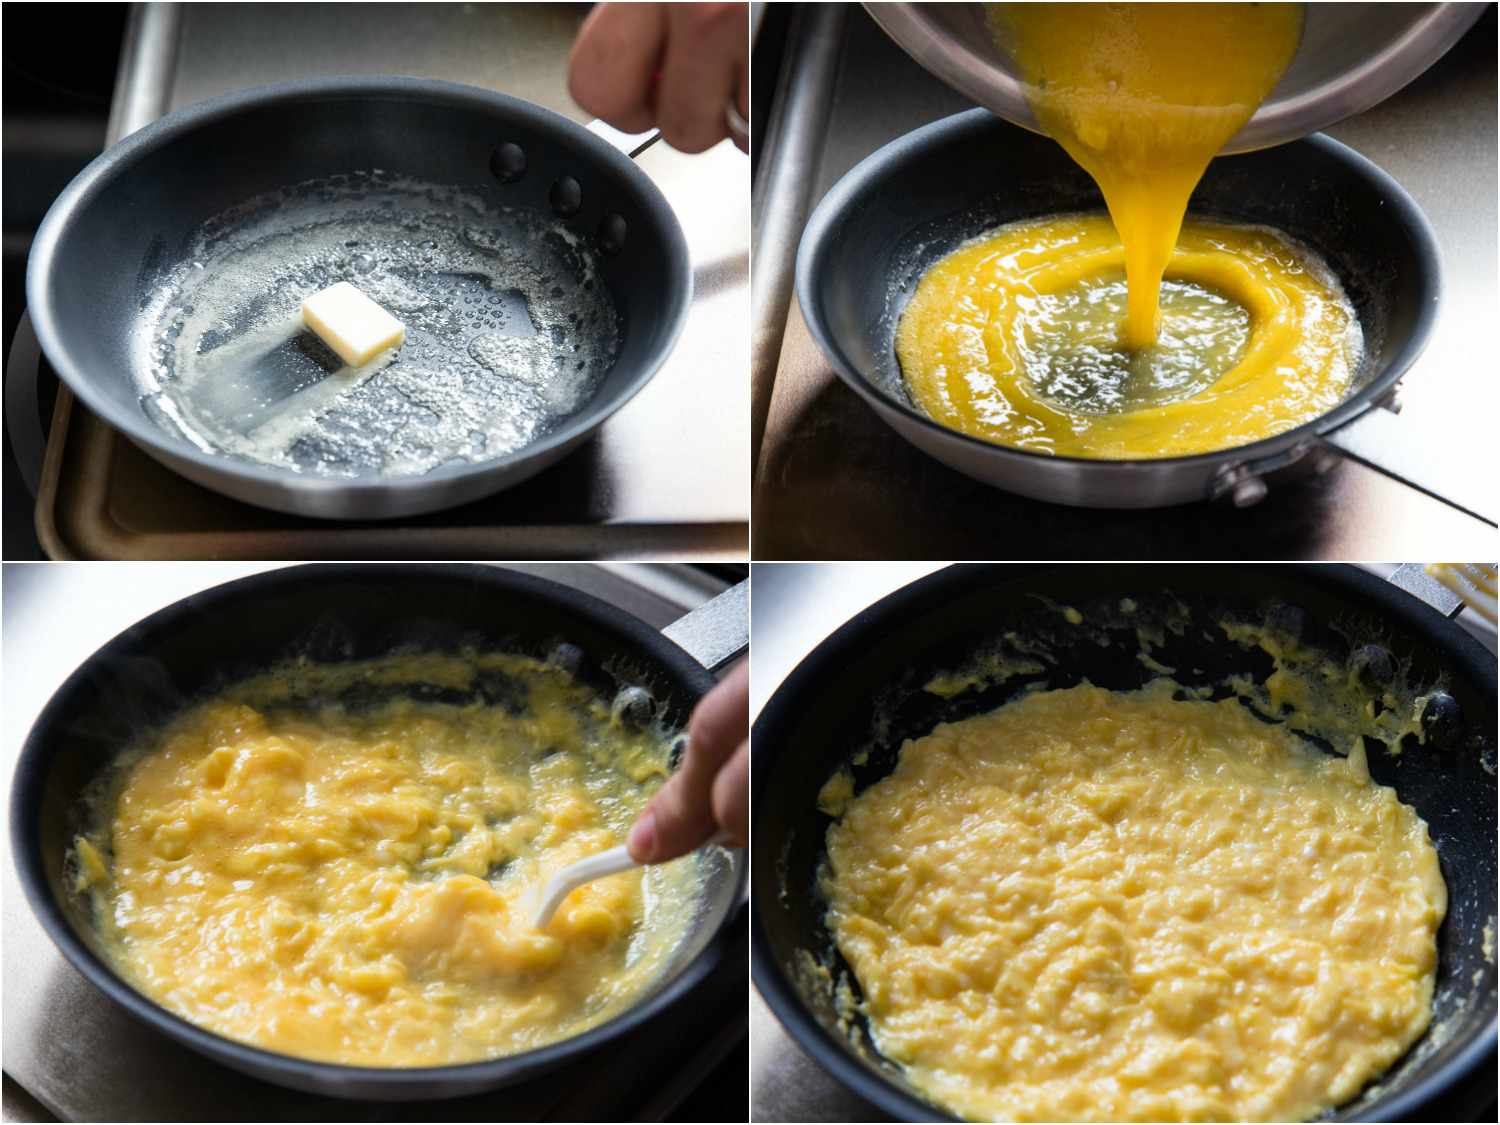 制作法式煎蛋卷的照片拼贴:在不粘锅里融化黄油，倒入鸡蛋，用塑料叉子搅拌鸡蛋，鸡蛋表面开始凝固gydF4y2Ba